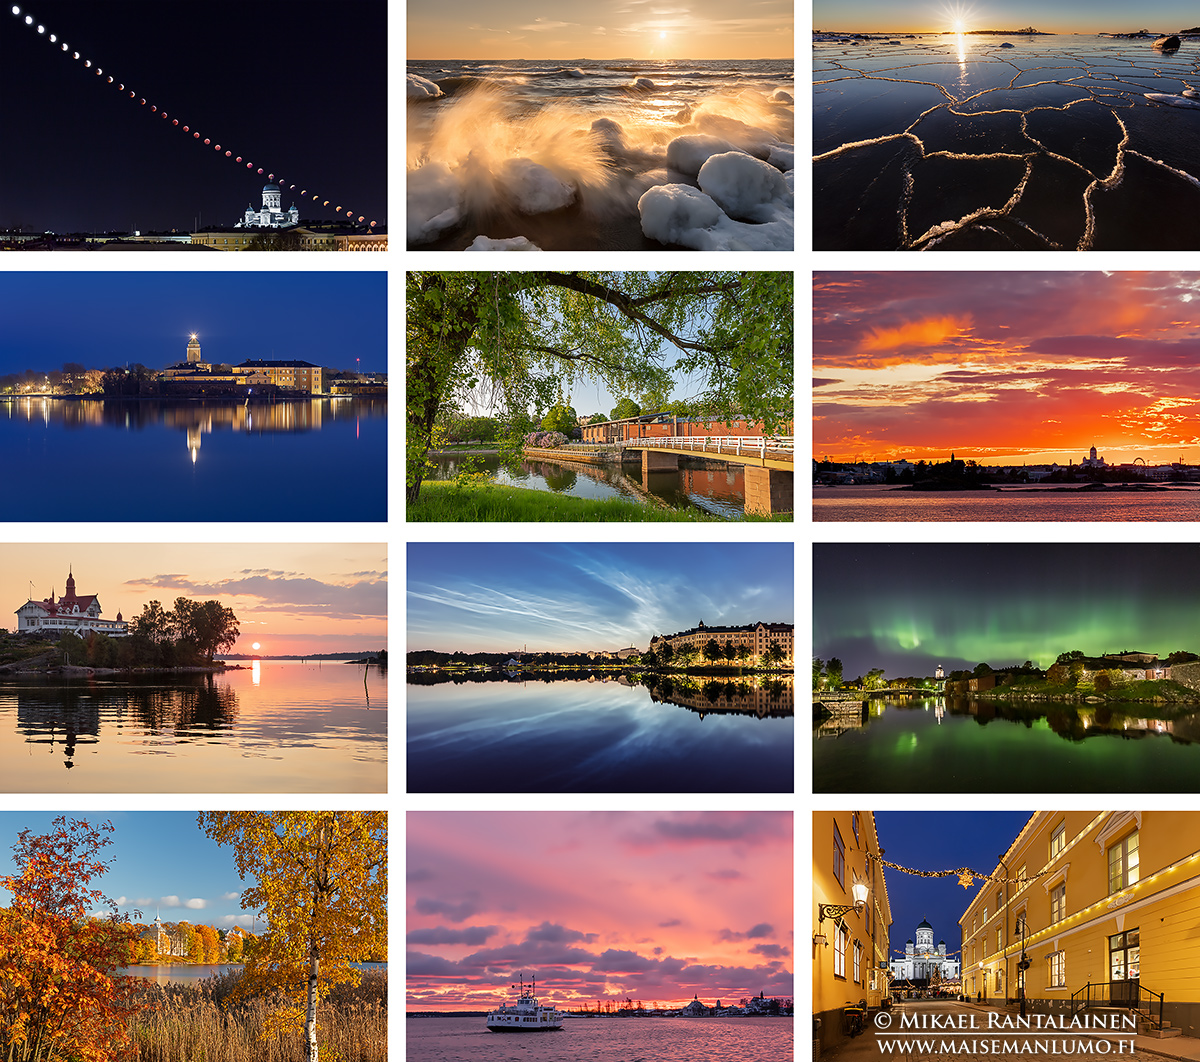 Helsinki Maisemakalenteri 2020